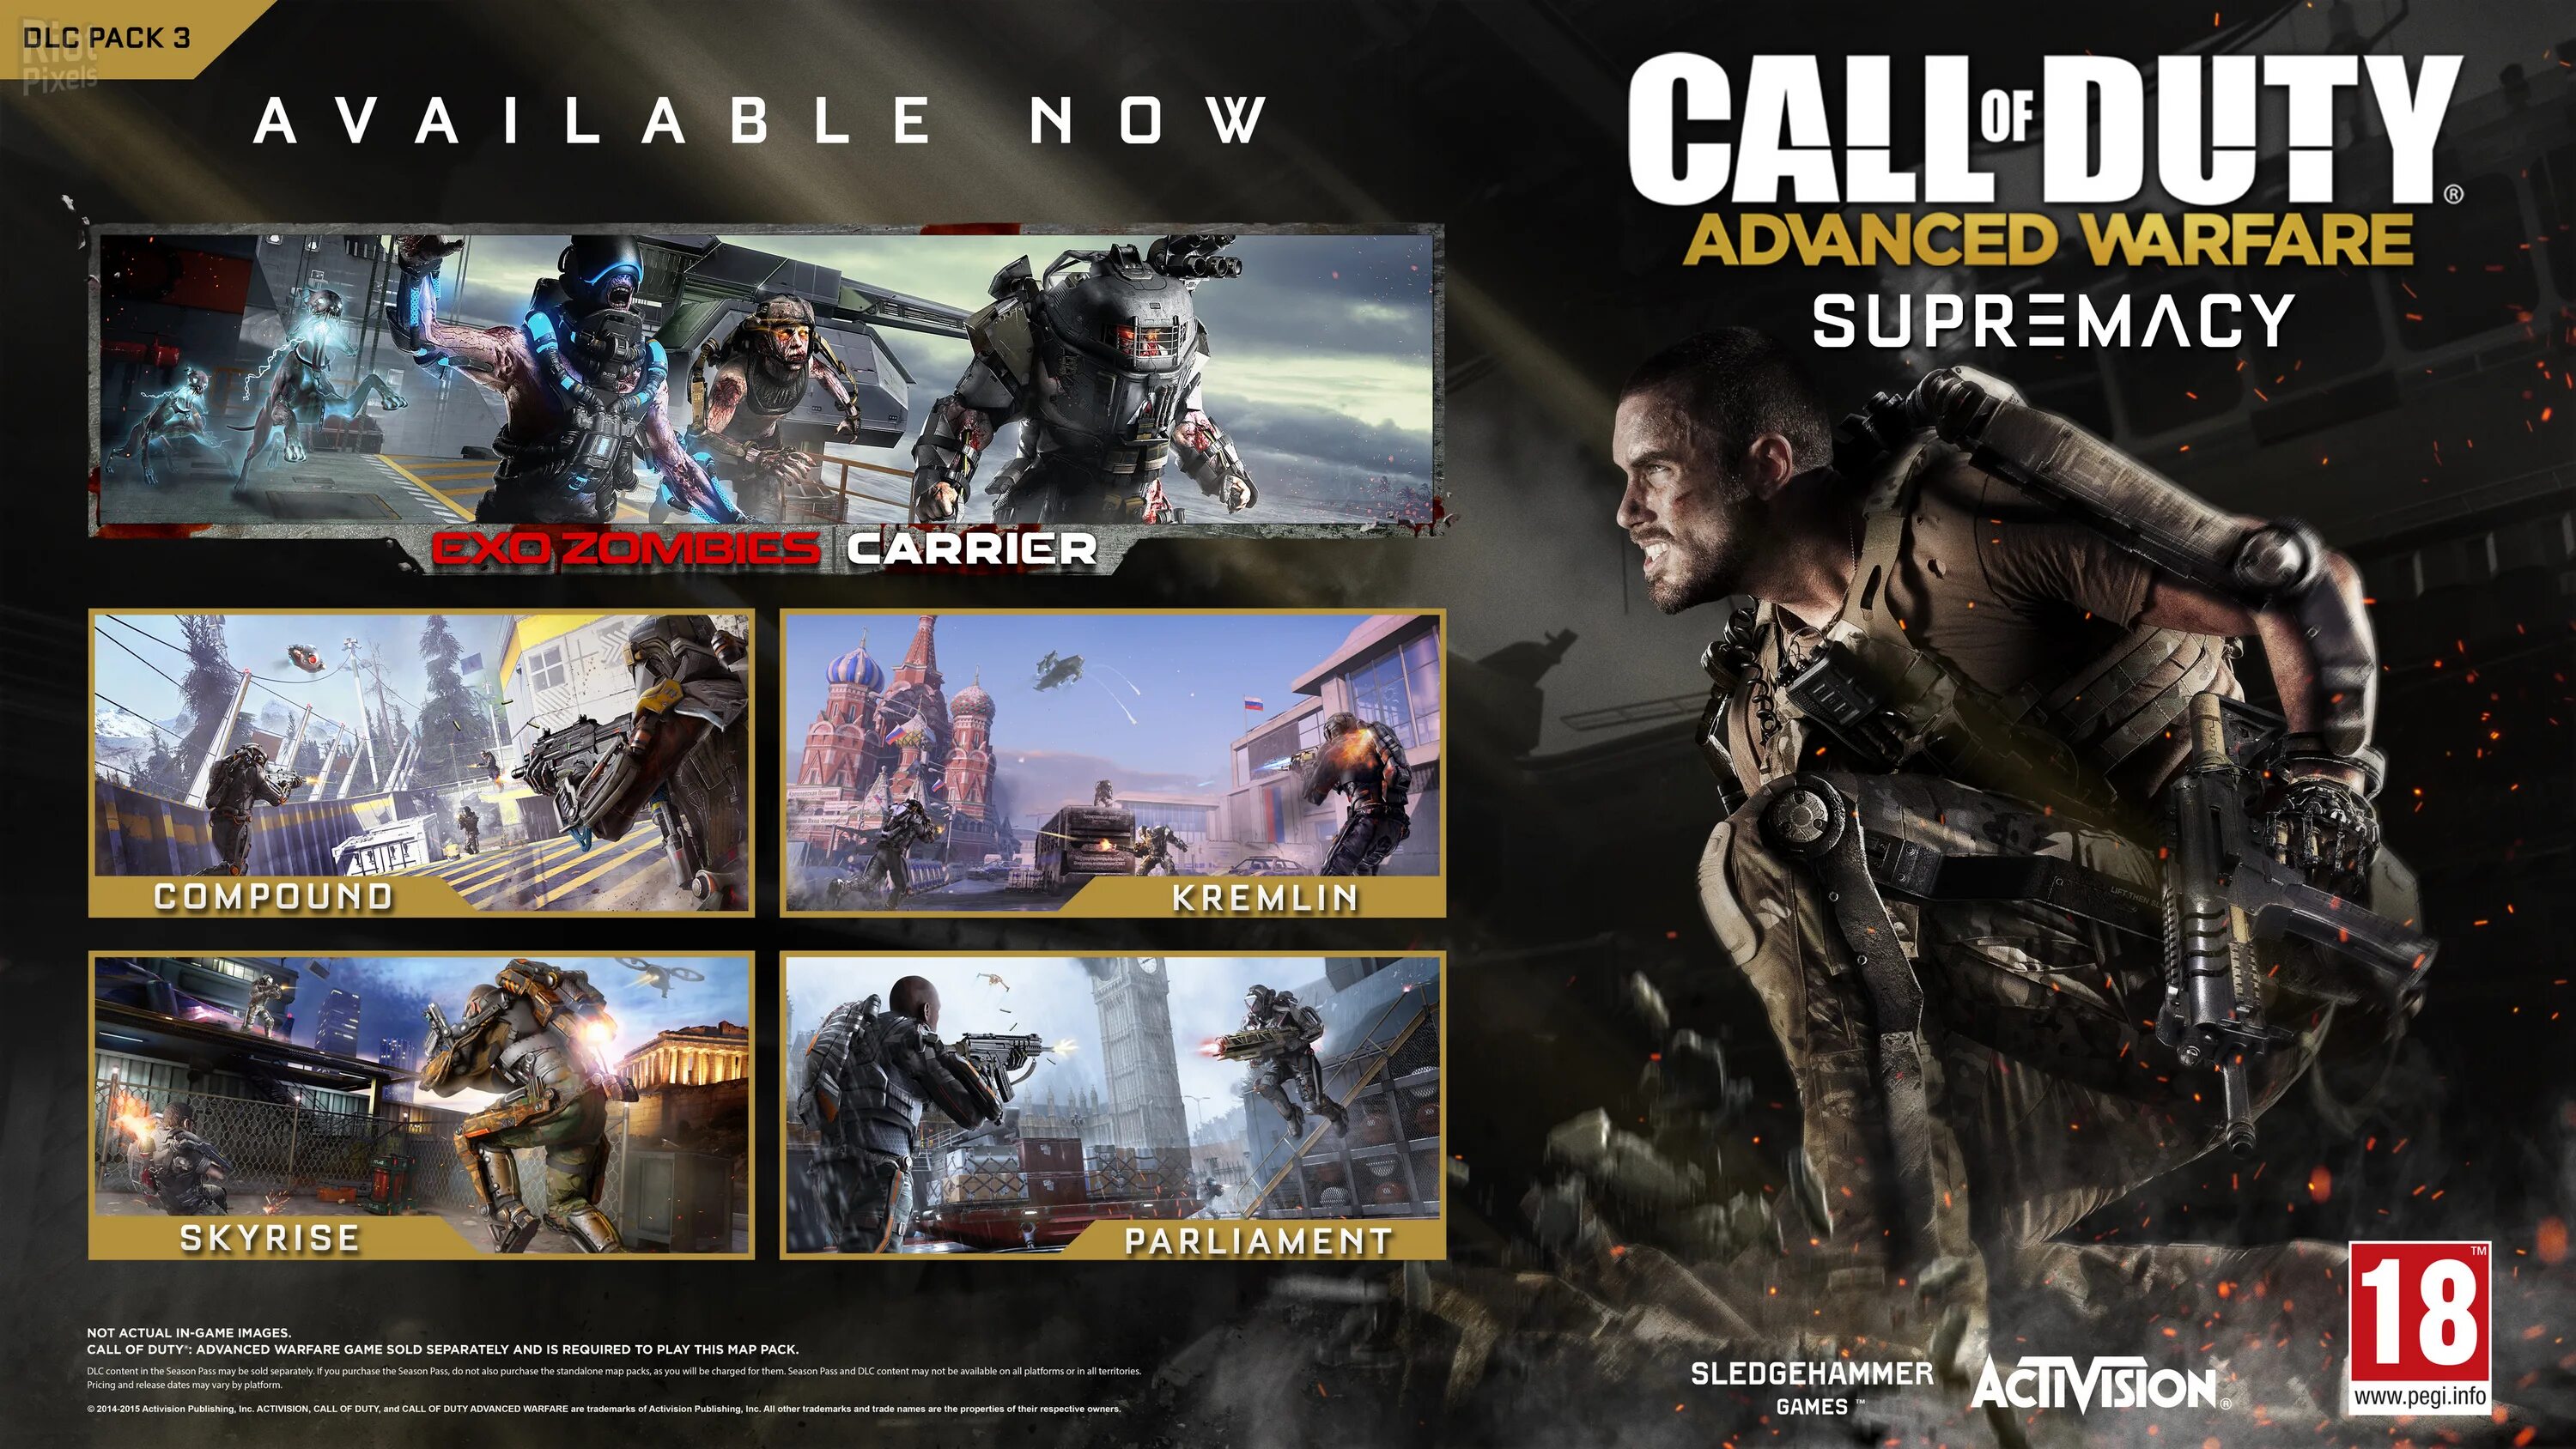 Call of Duty Advanced на плейстейшен 3. Call of Duty Advanced Warfare обложка. Call of Duty Advanced Warfare Xbox 360. Call of Duty: Advanced Warfare - Supremacy. Call of duty advanced warfare системные требования